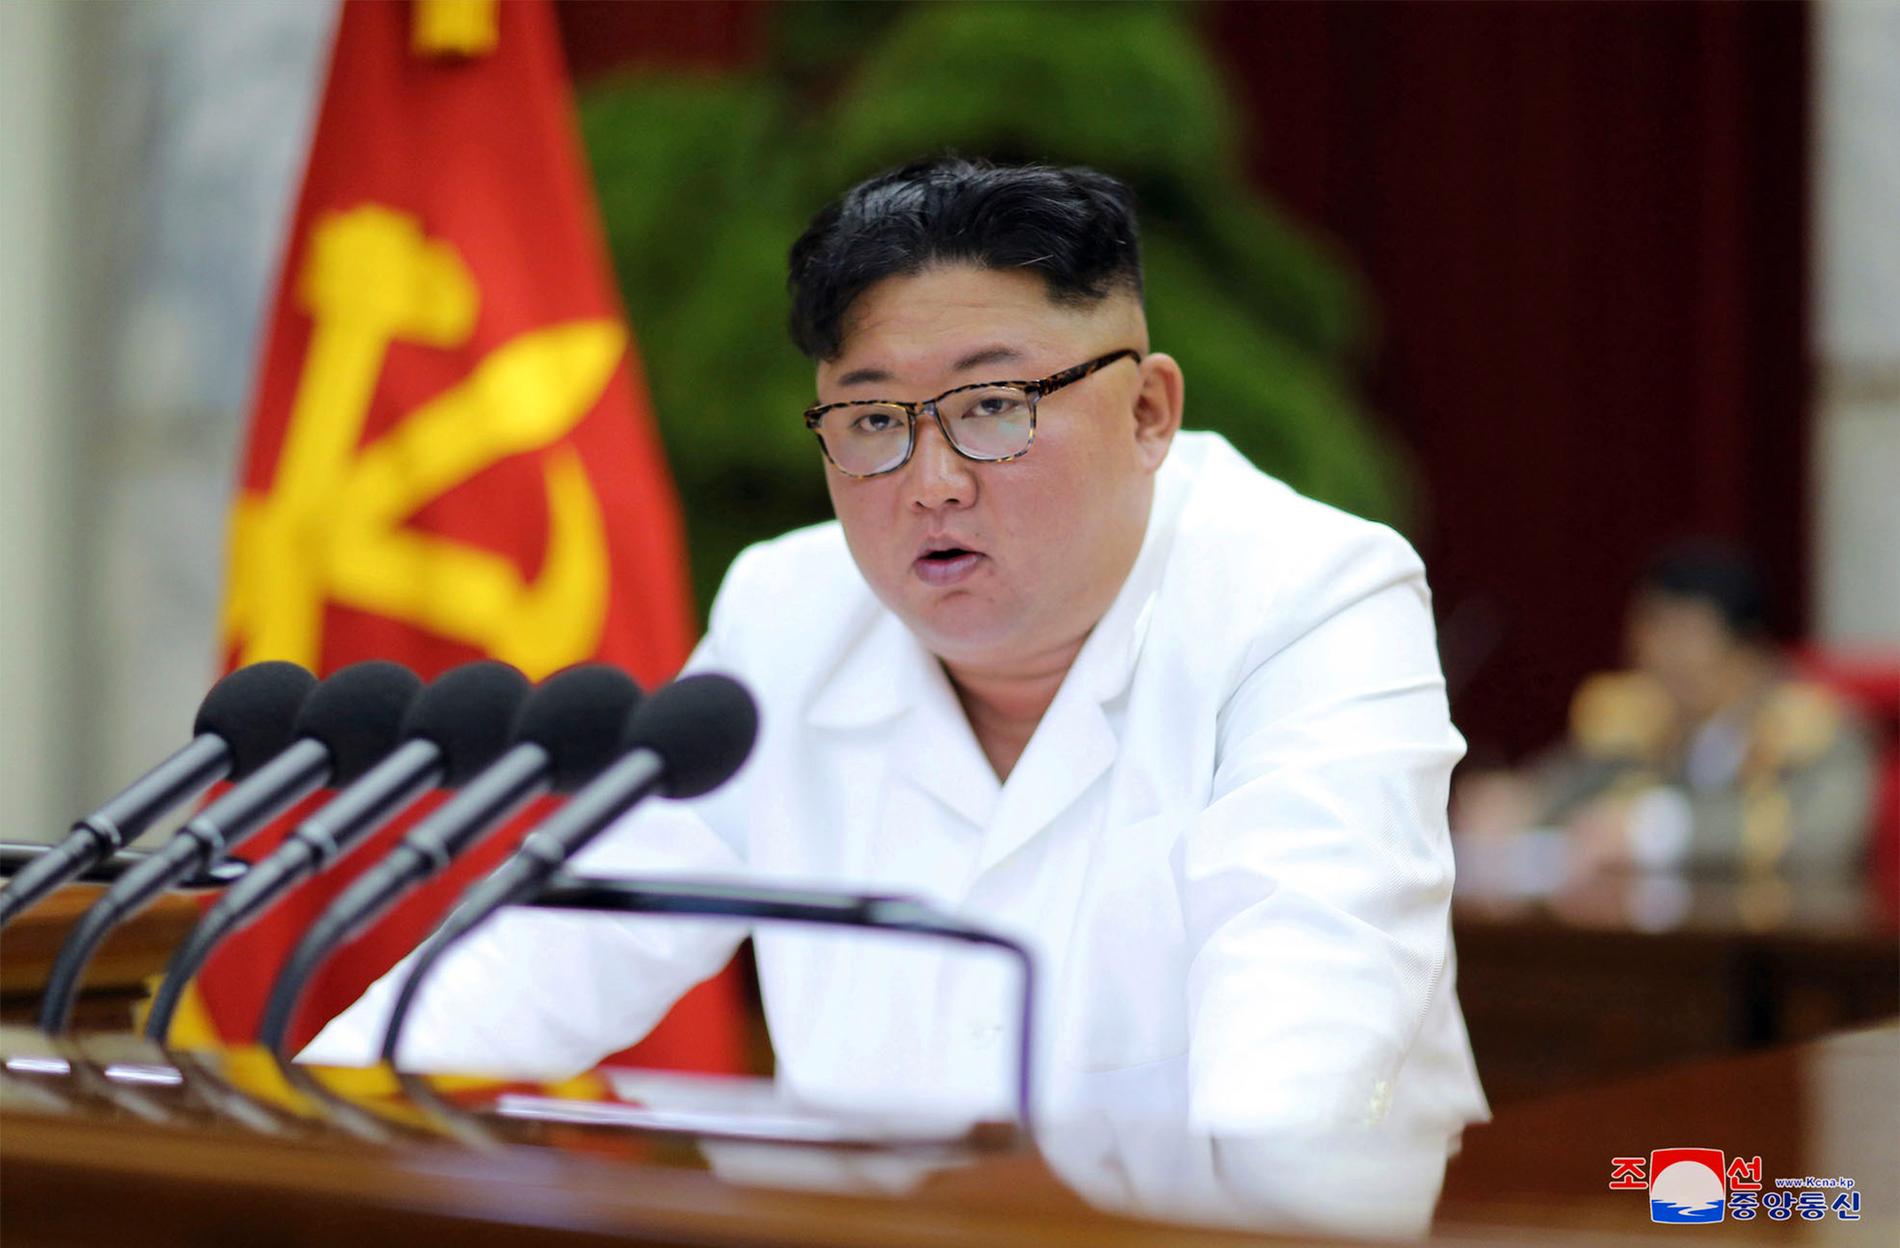 Nordkoreas ledare Kim Jong-Un. Arkivbild